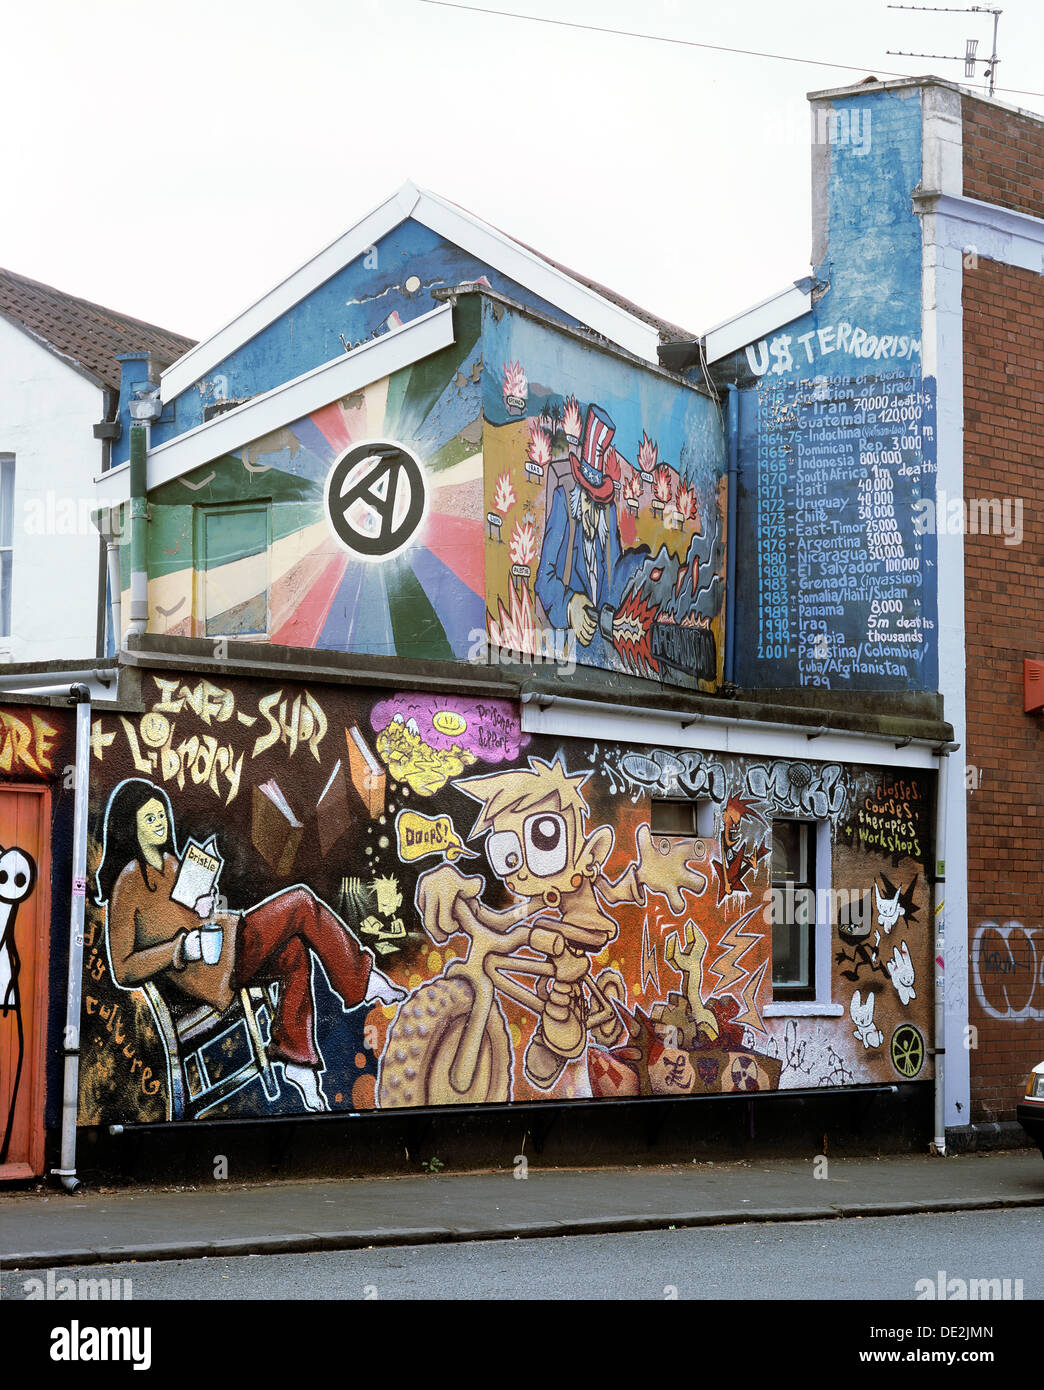 Wandbild Darstellung antikapitalistische und anarchistische Themen auf dem Entschuldigungsschreiben Kommunity Projekt Bau Rückwand, Robertson Straße, Bristol Stockfoto